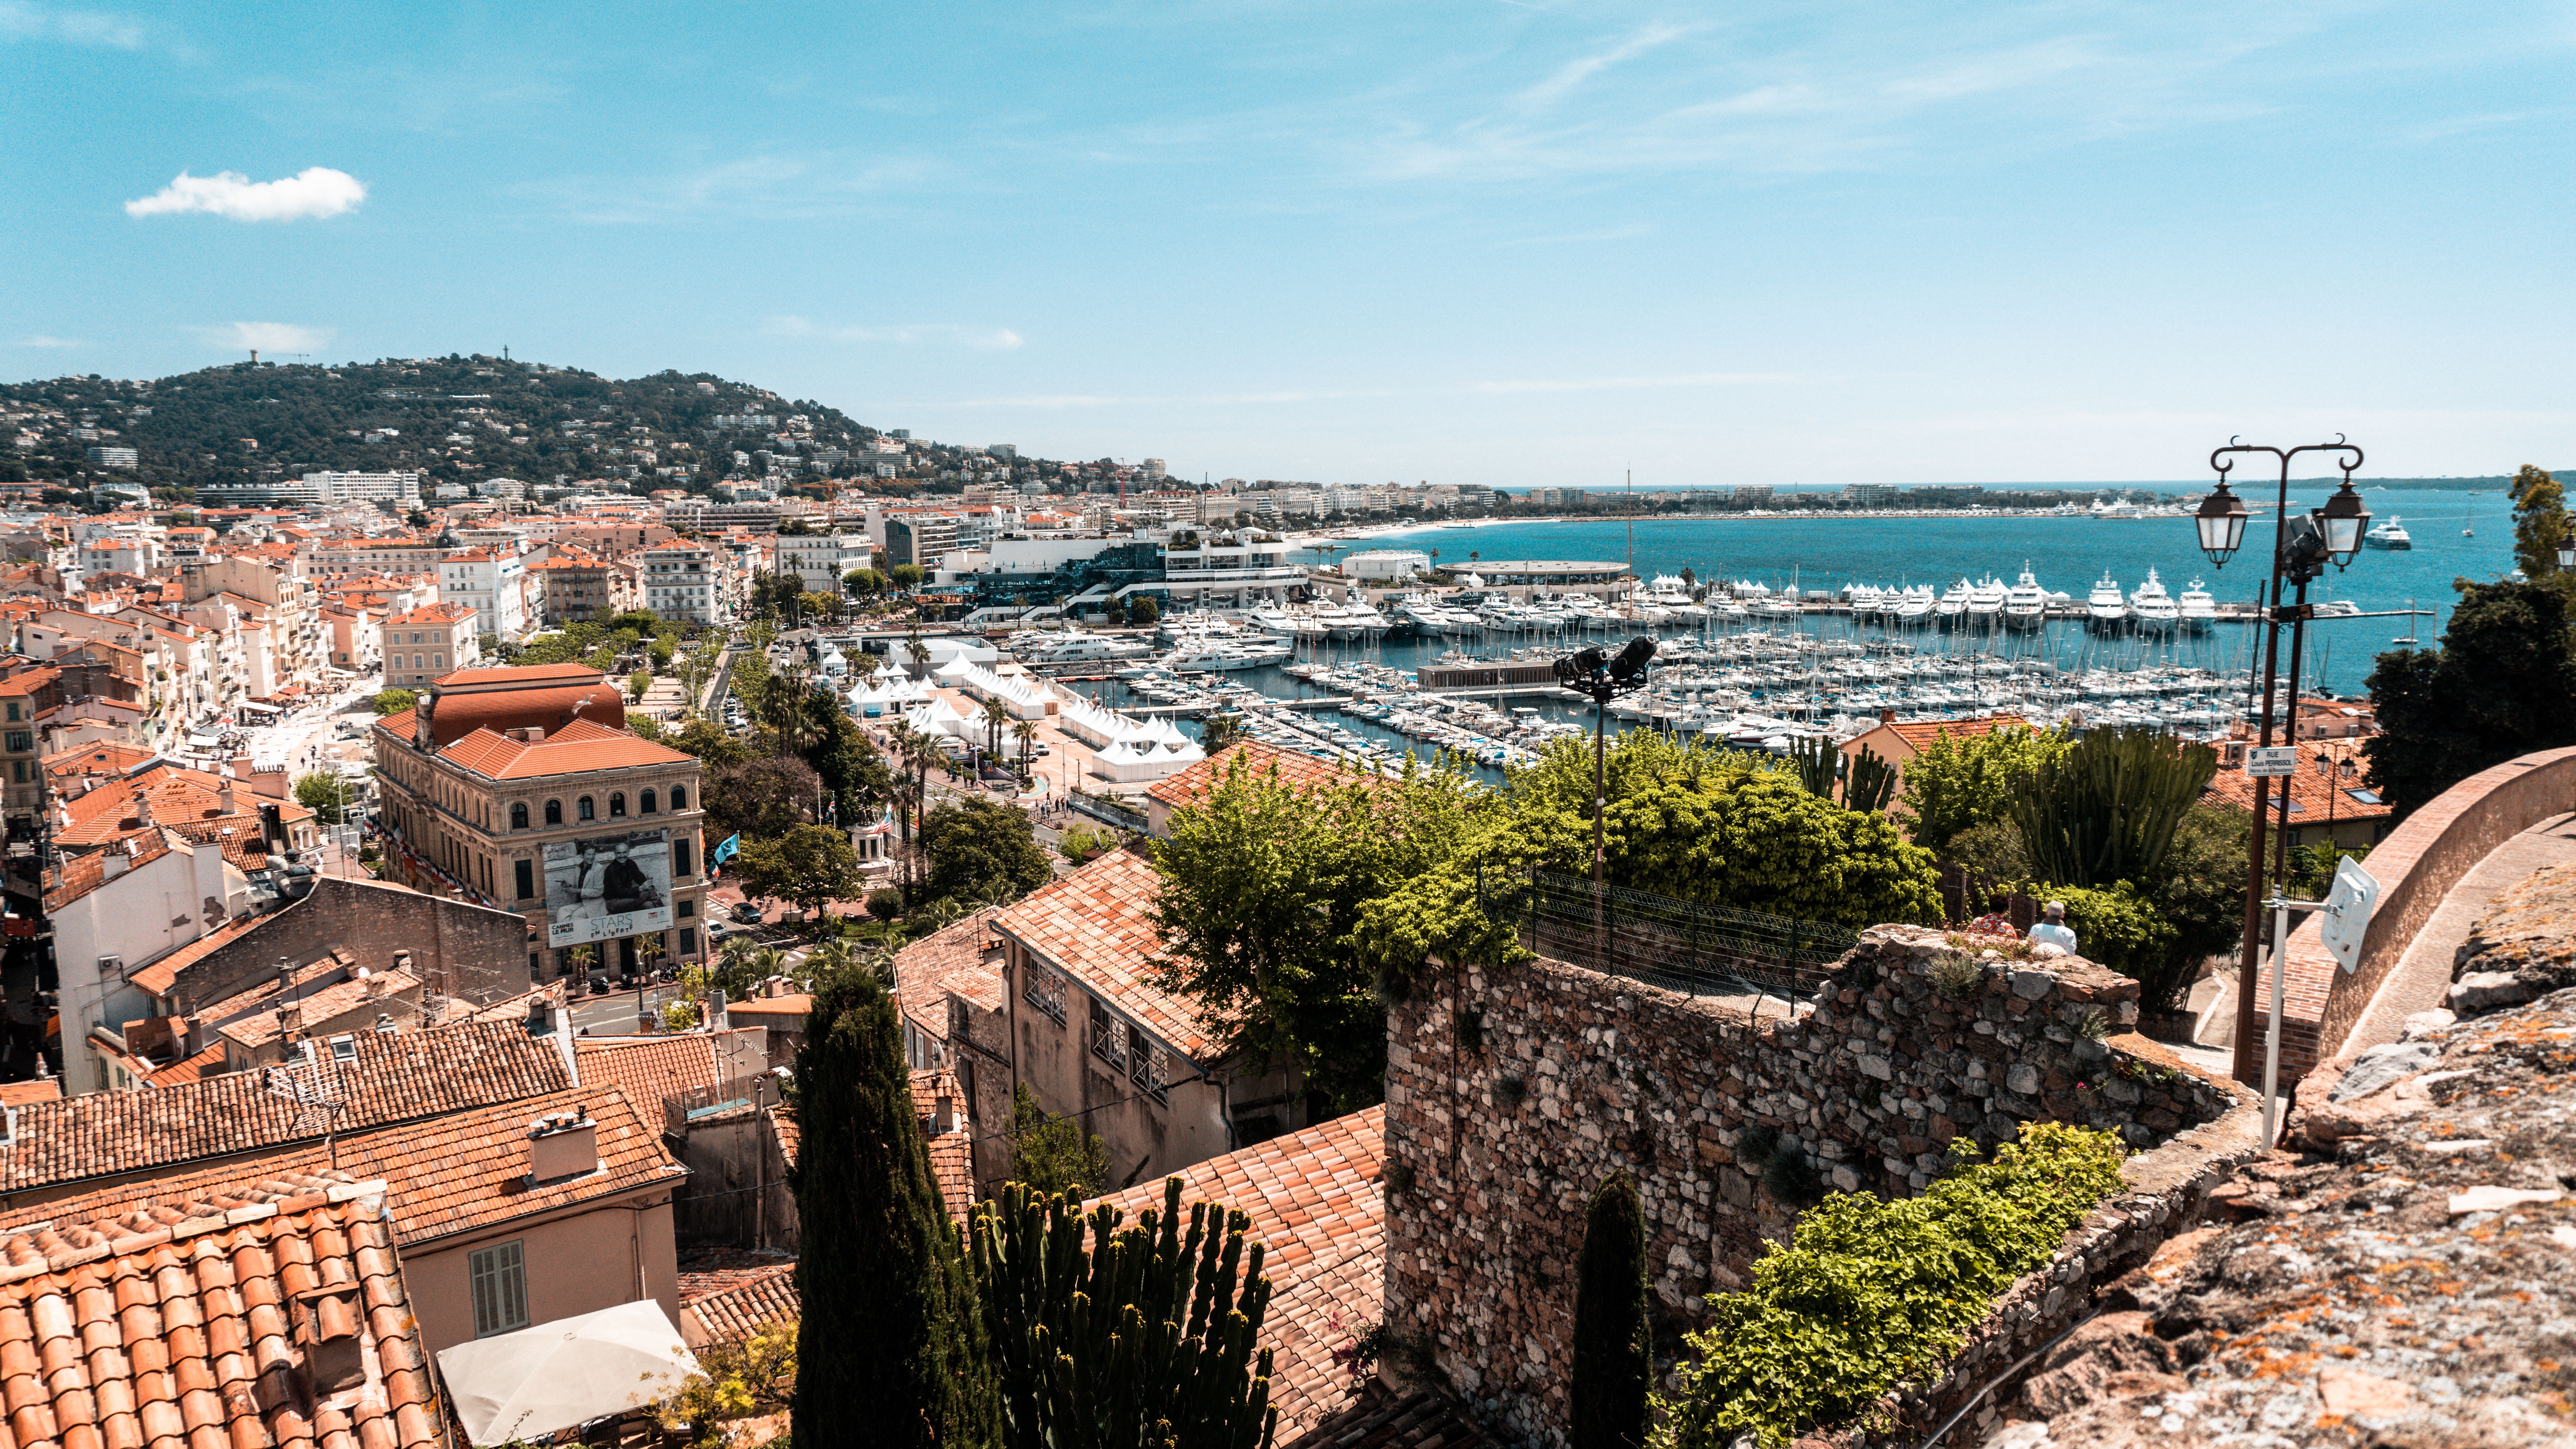 La ville de Cannes mise sur Instagram et les influenceurs pour sa communication